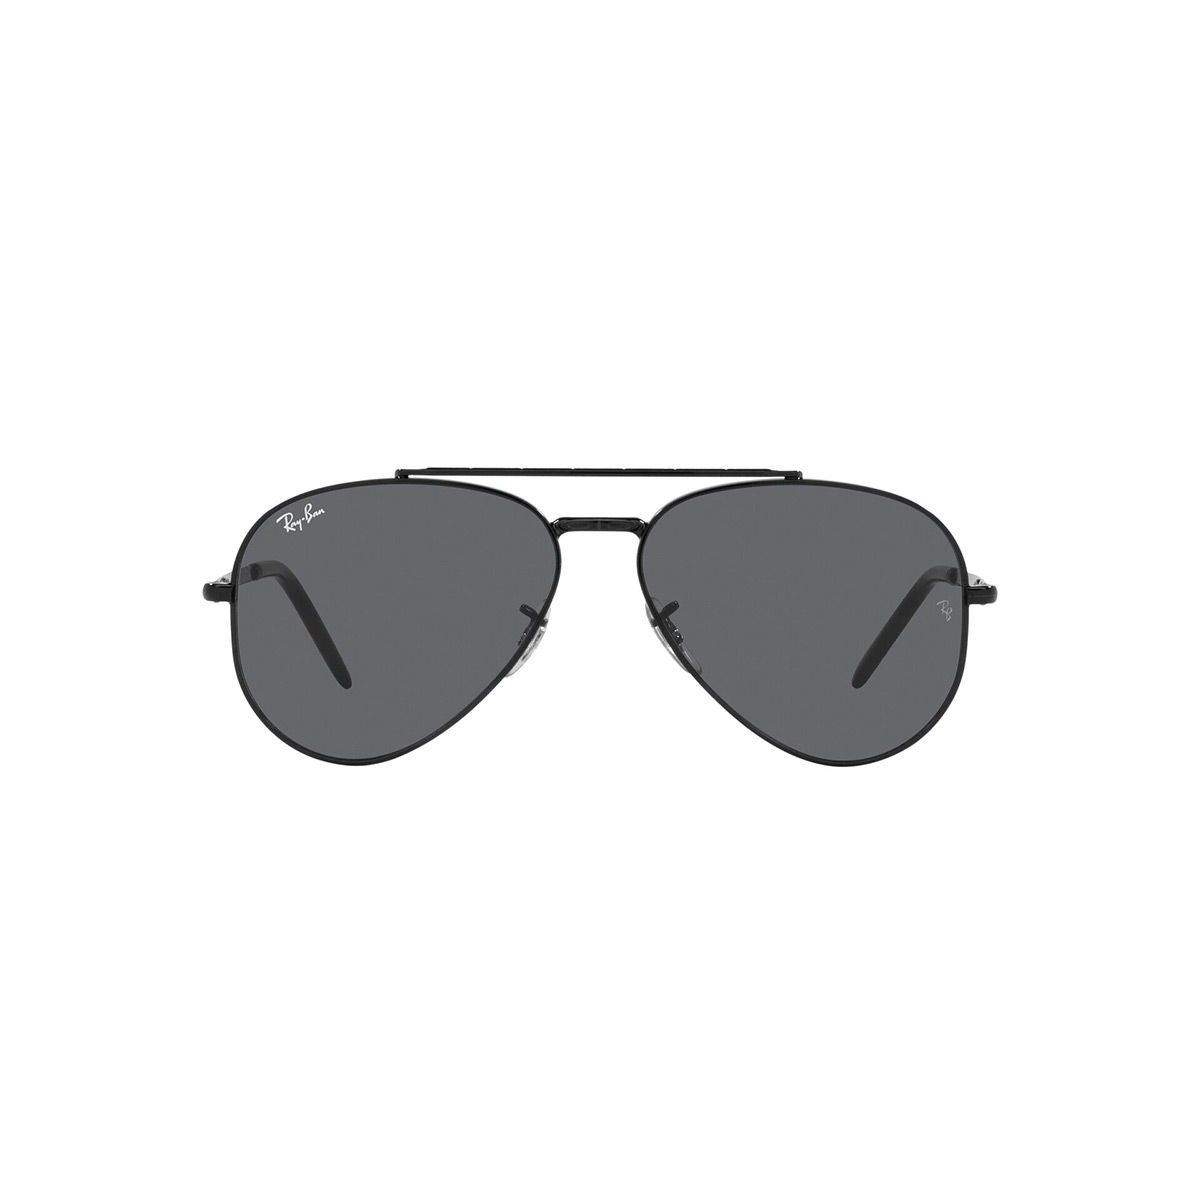 Buy Ray-Ban Aviator Sunglasses Blue For Men & Women Online @ Best Prices in  India | Flipkart.com